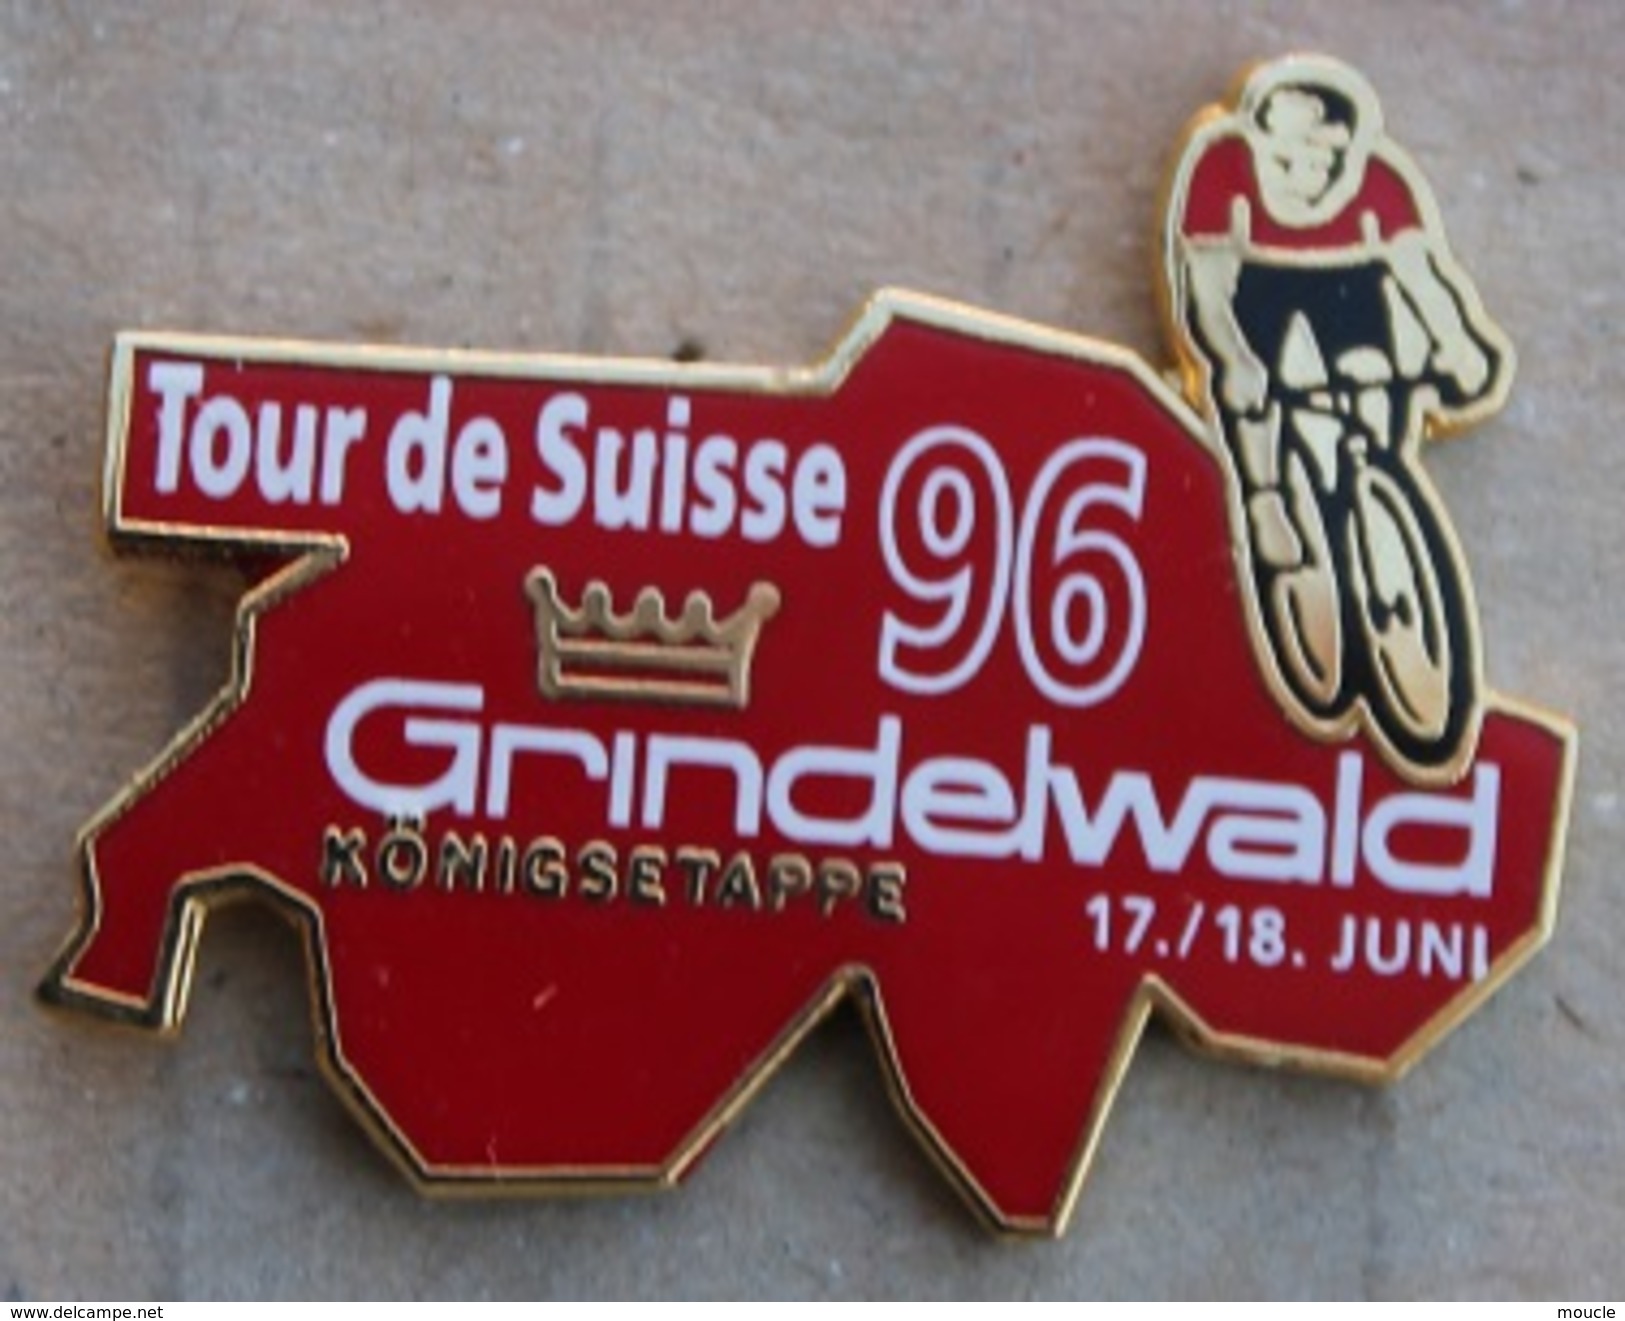 CYCLISME - VELO - CYCLISTE - TOUR DE SUISSE 96 - GRINDELWALD 17/18 JUIN - COURONNE - KÖNIGSETAPPE - SCHWEIZ -     (15) - Cyclisme